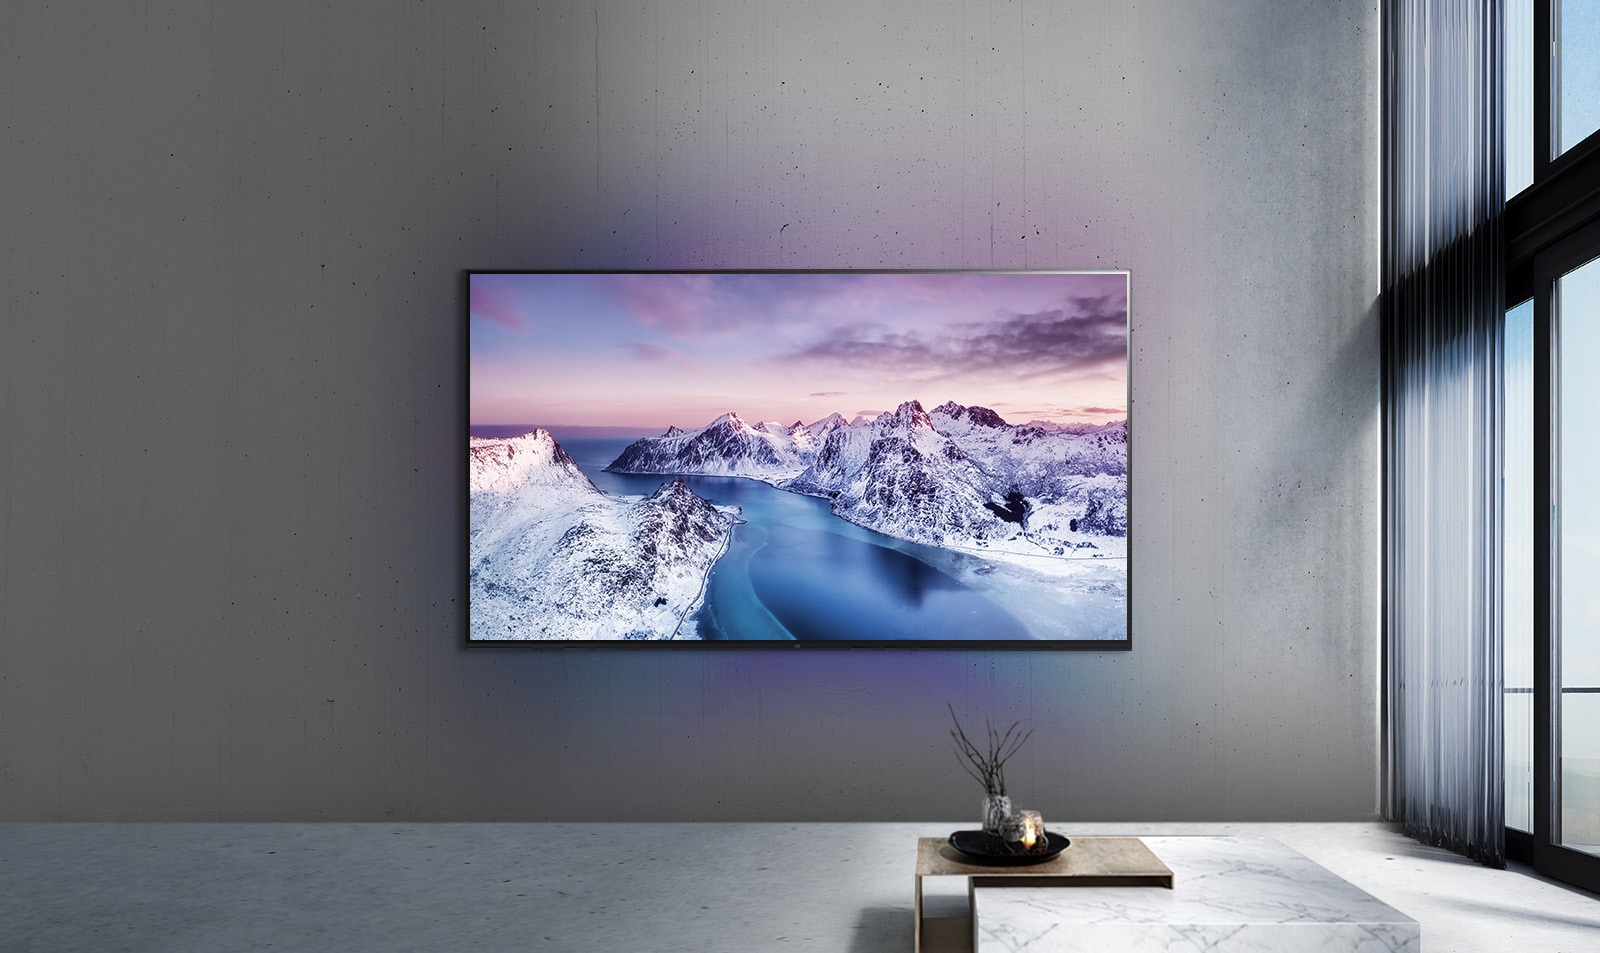 یک تلویزیون UHD که روی دیوار و پشت میزی در فضایی به سبک zen نصب شده است.